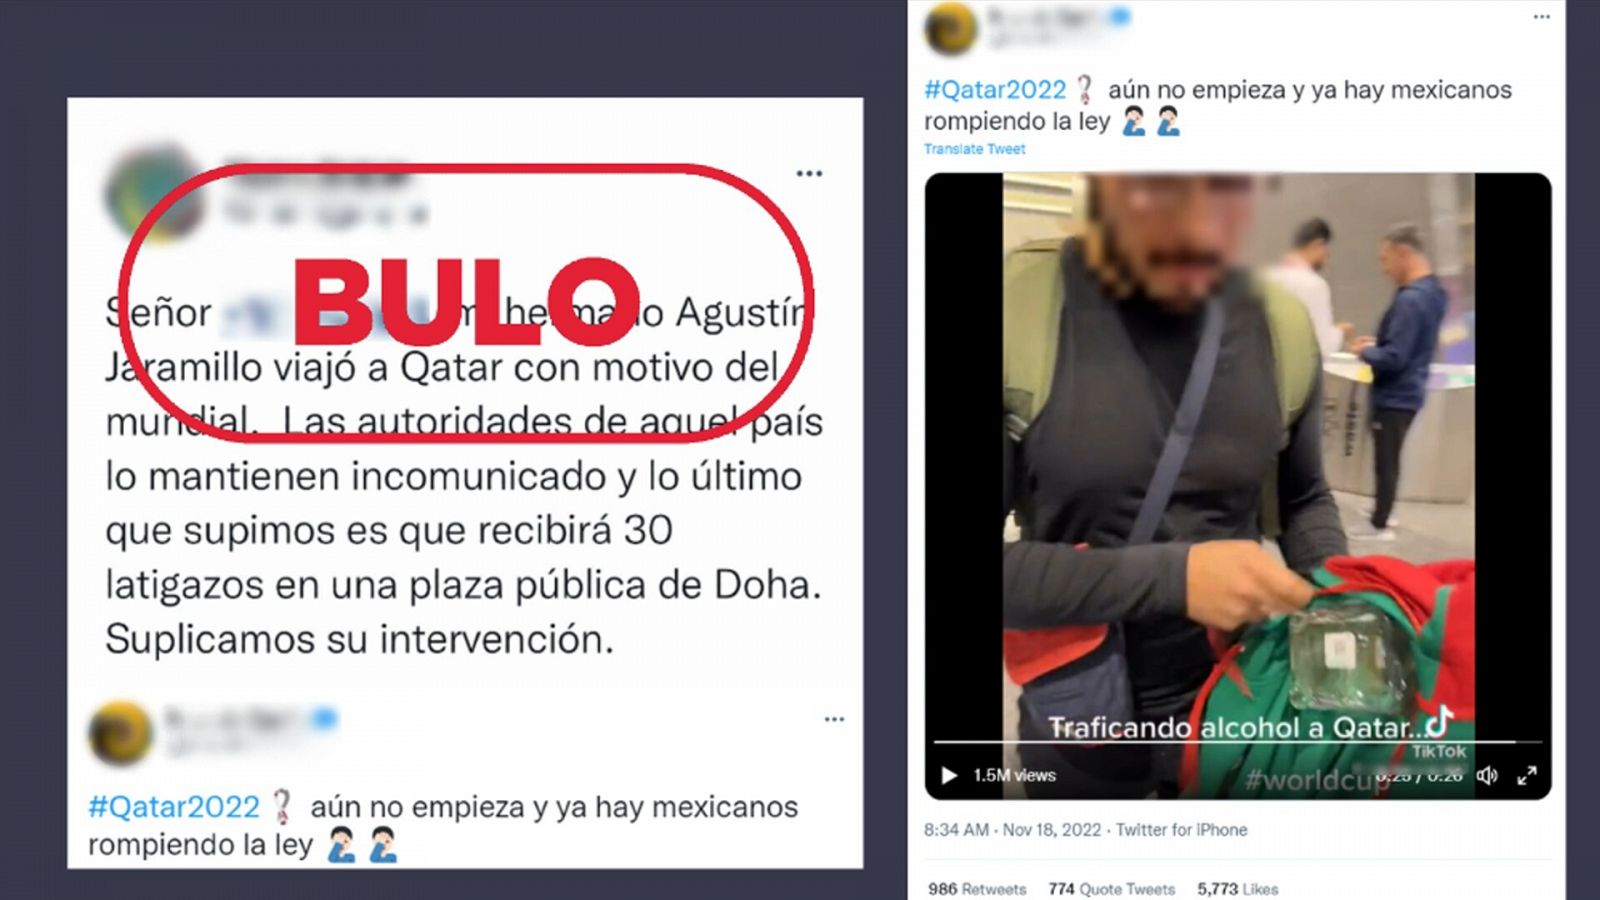 Mensajes que reproducen el bulo de que Catar ha condenado a 30 latigazos a un mexicano por llevar alcohol al Mundial. Con el sello bulo.